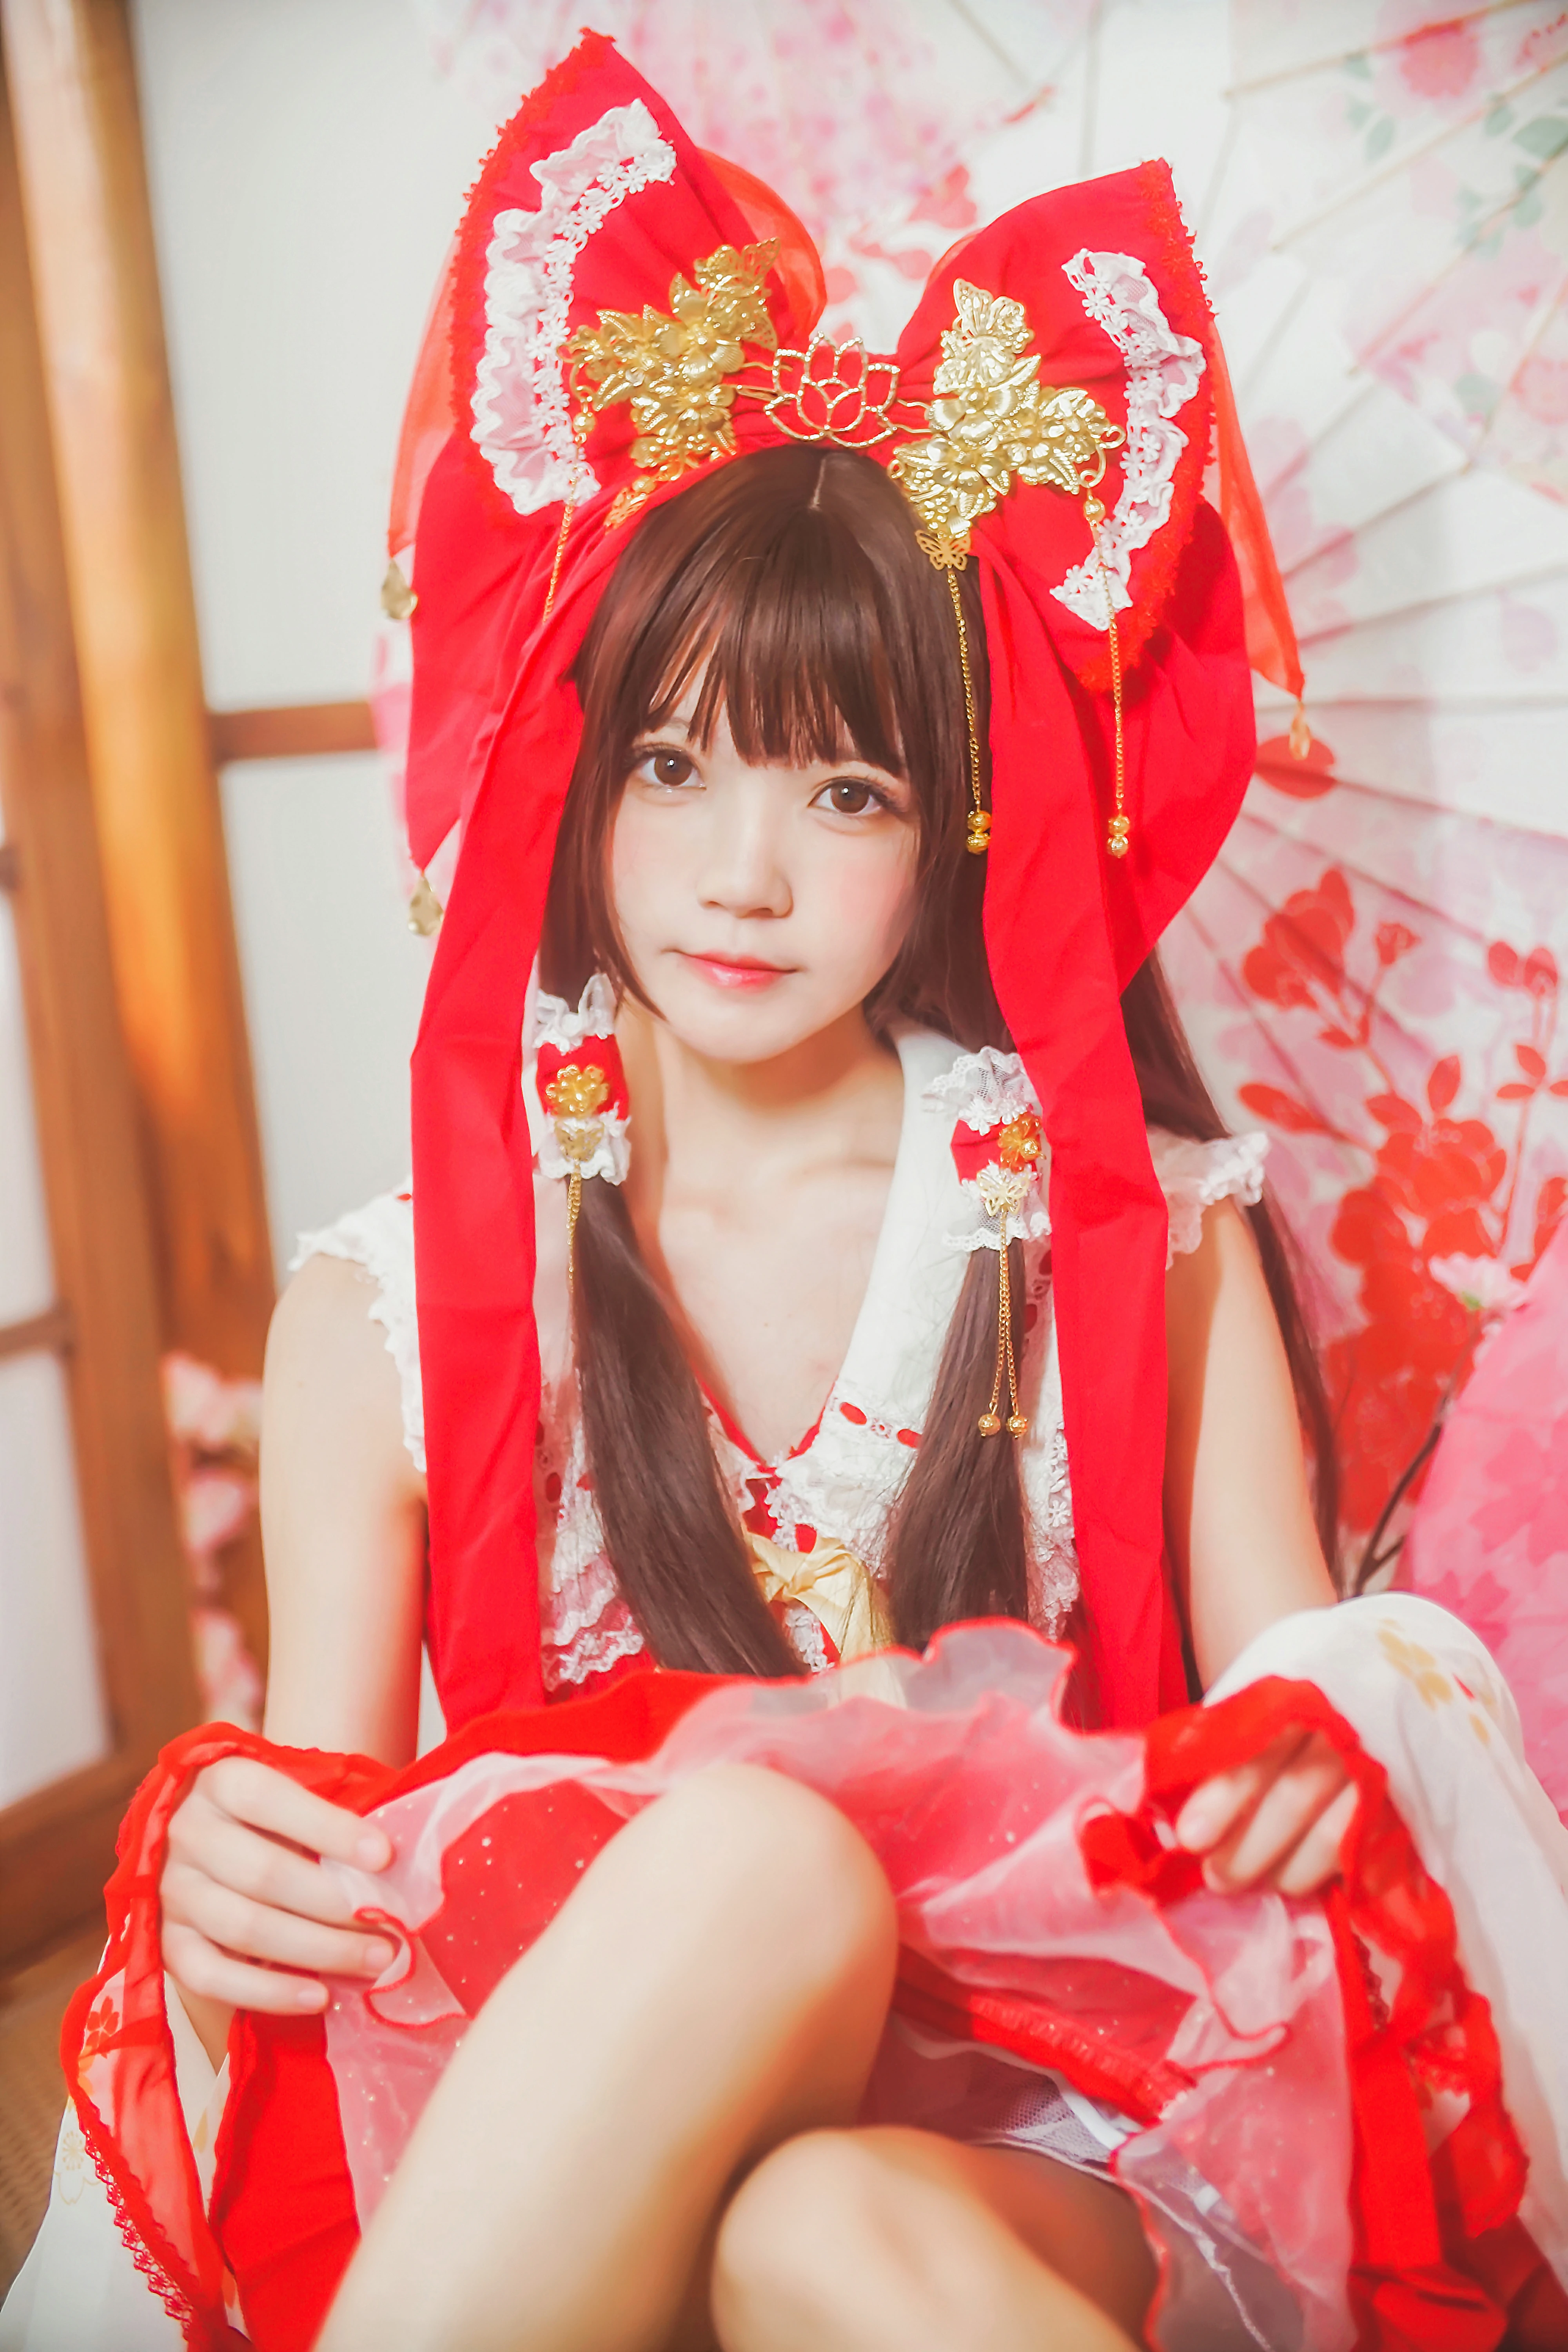 清纯少女小萝莉 桜桃喵 红色连身制服裙 和风写真,0016